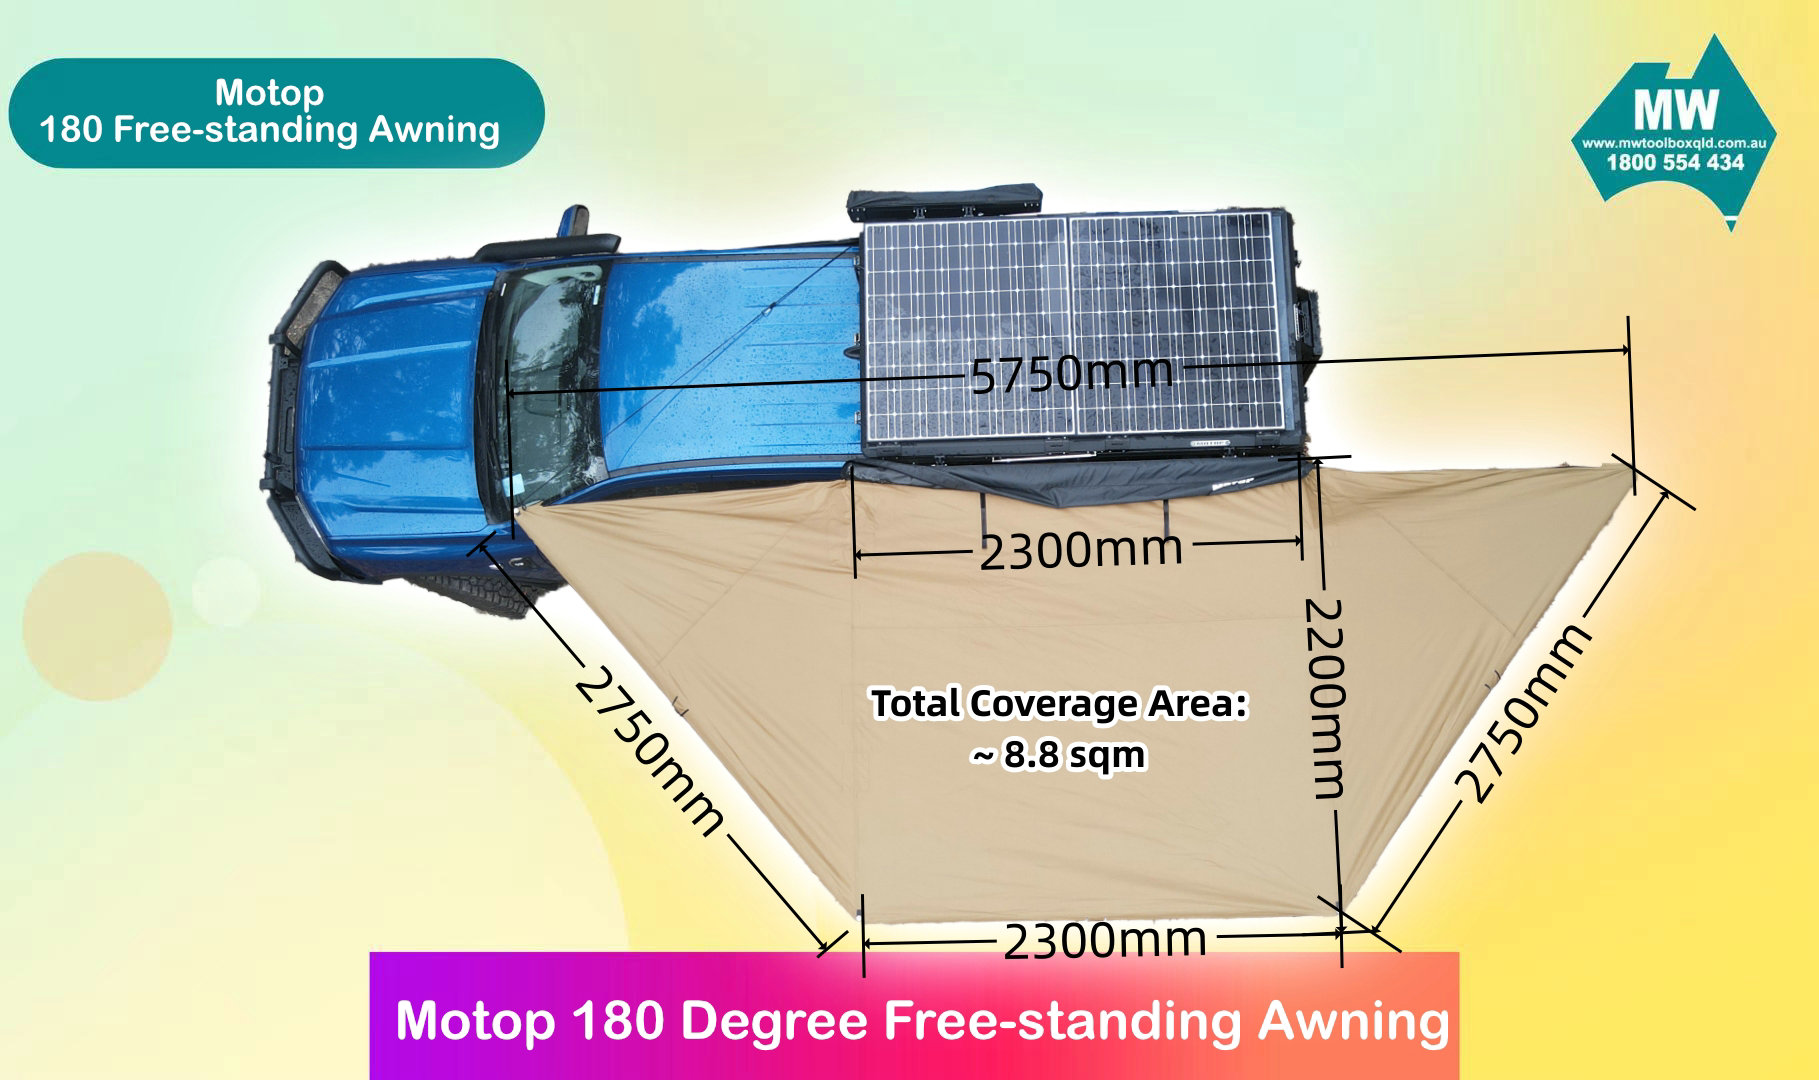 Motop 180 Free-standing Awning (2)